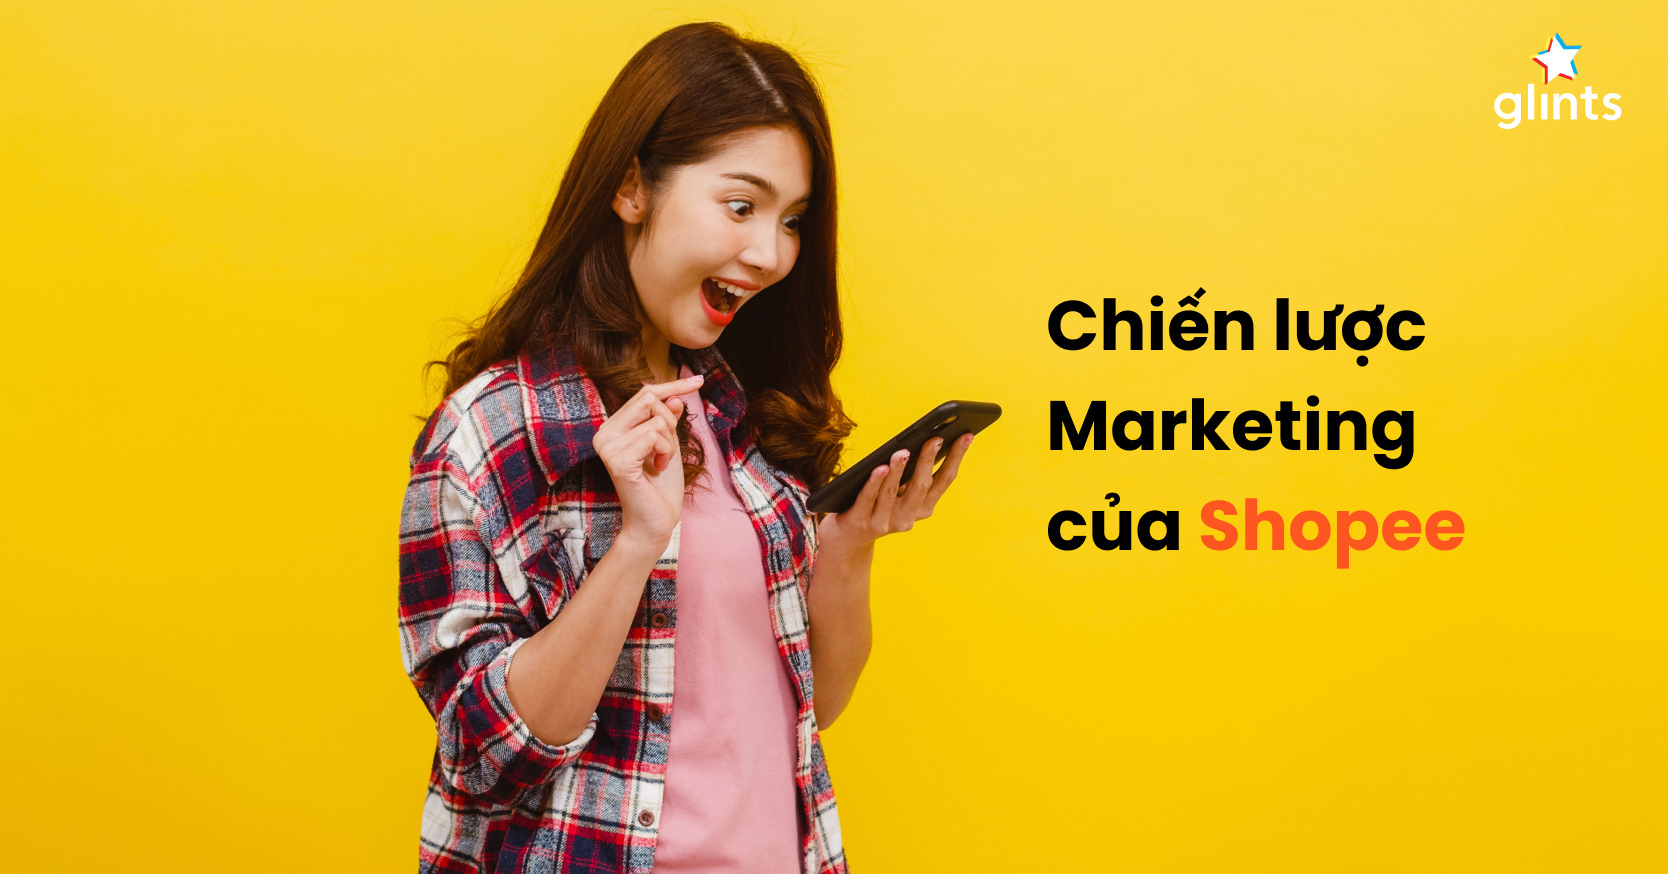 Chiến lược tiếp thị của Shopee đang phát triển vượt bật trong năm 2024, với màu vàng được chọn làm một trong những màu chủ đạo để thu hút khách hàng. Cùng với các chương trình khuyến mãi hấp dẫn và giao hàng nhanh chóng, Shopee đang trở thành nơi mua sắm trực tuyến đáng tin cậy nhất ở Việt Nam.